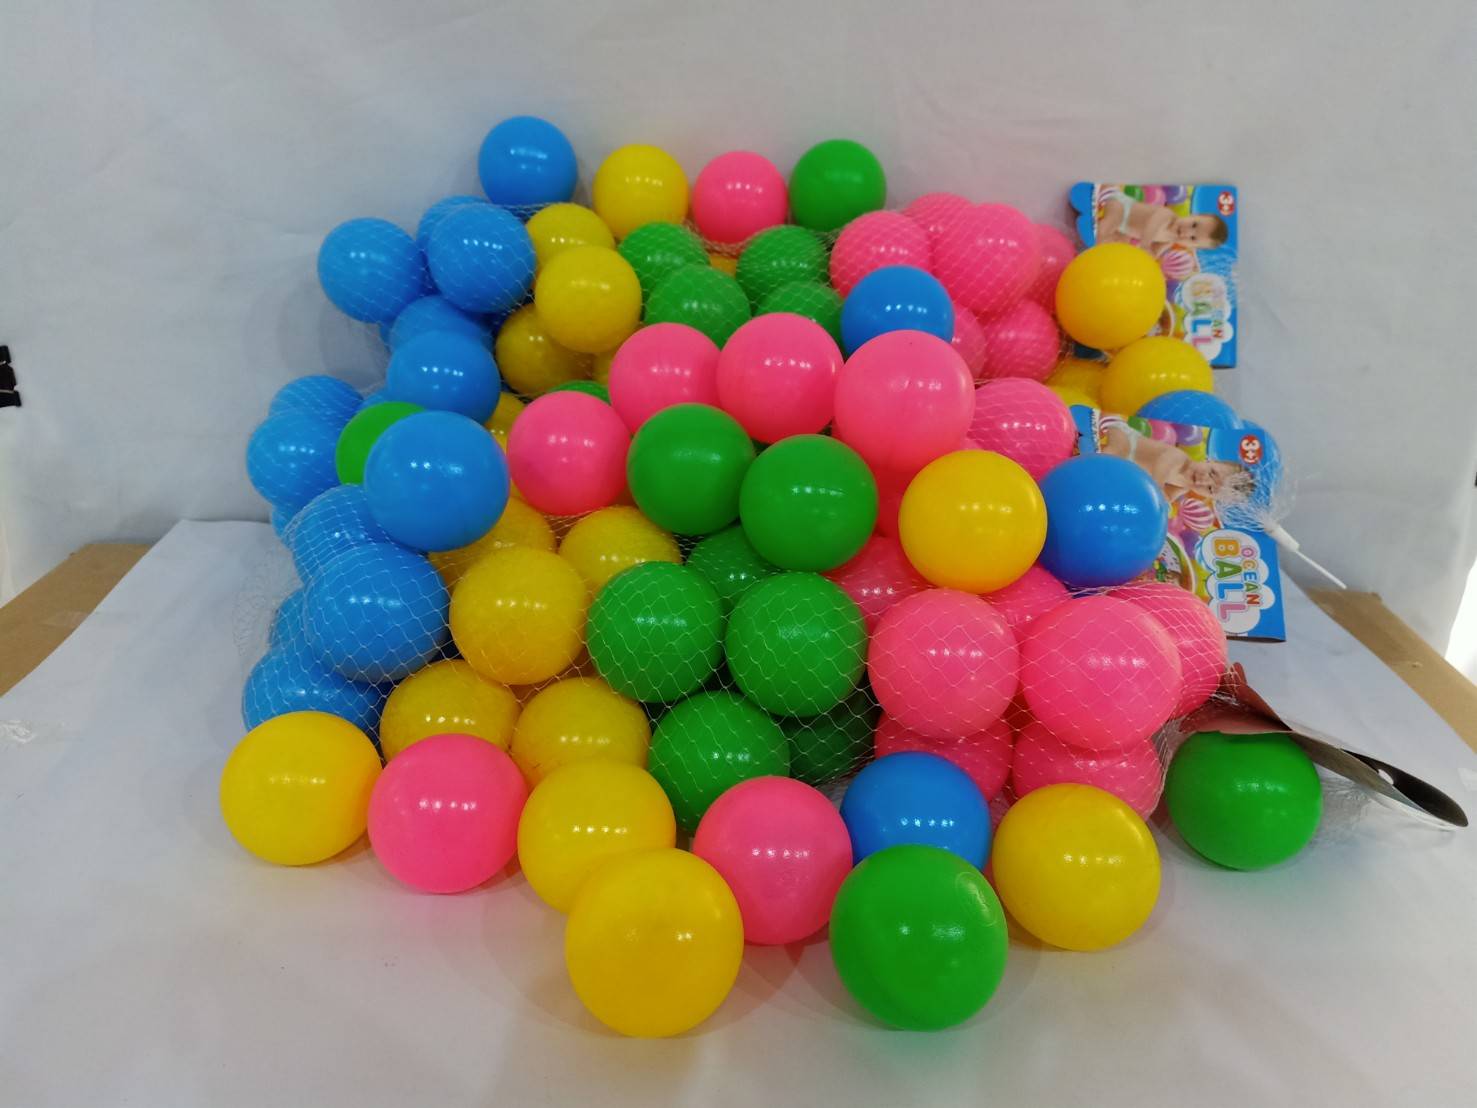 Kids castle ลูกบอลสีปลอดสารพิษ 32 ลูก ขนาด 2.5 นิ้ว